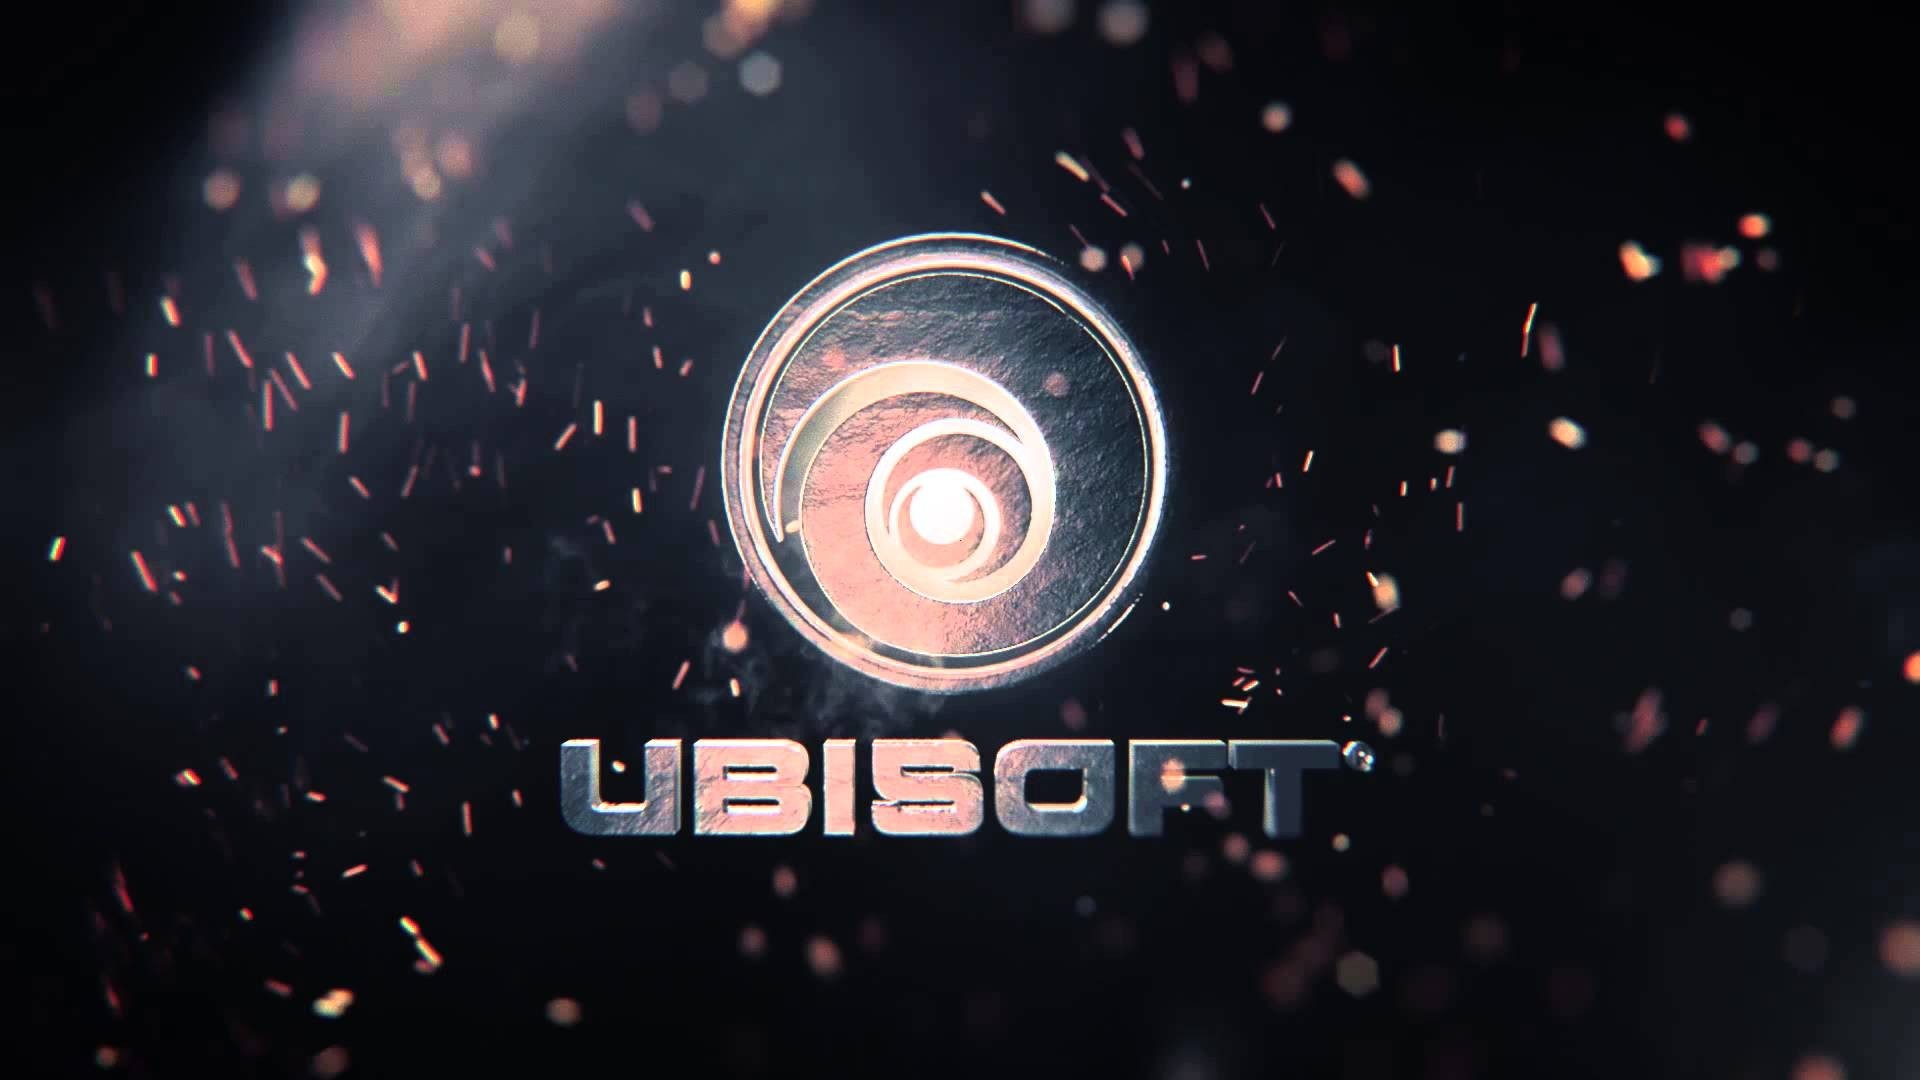 Skull and Bones: Ubisoft altera data de lançamento e anuncia beta